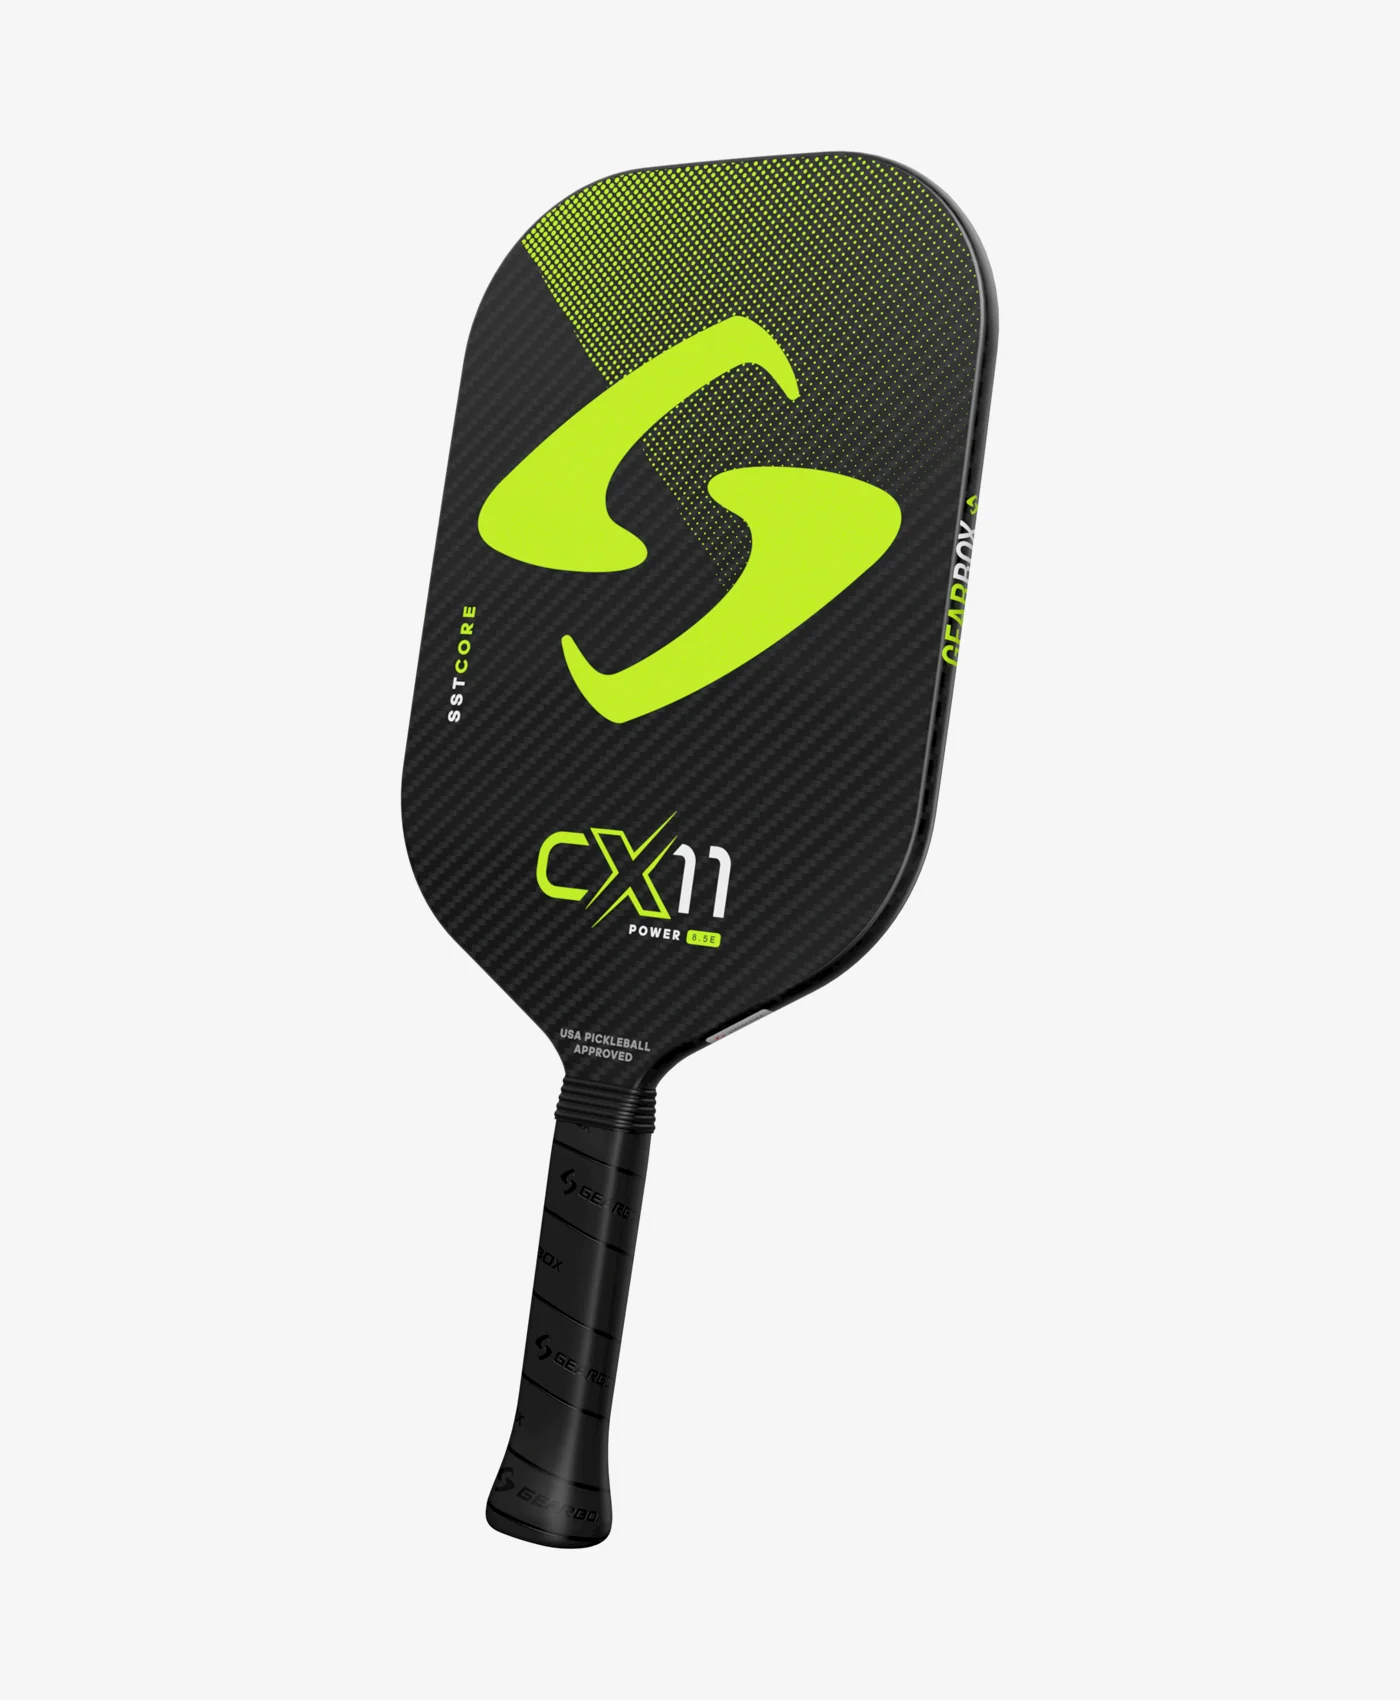 CX11E Power - Green - 8.5oz